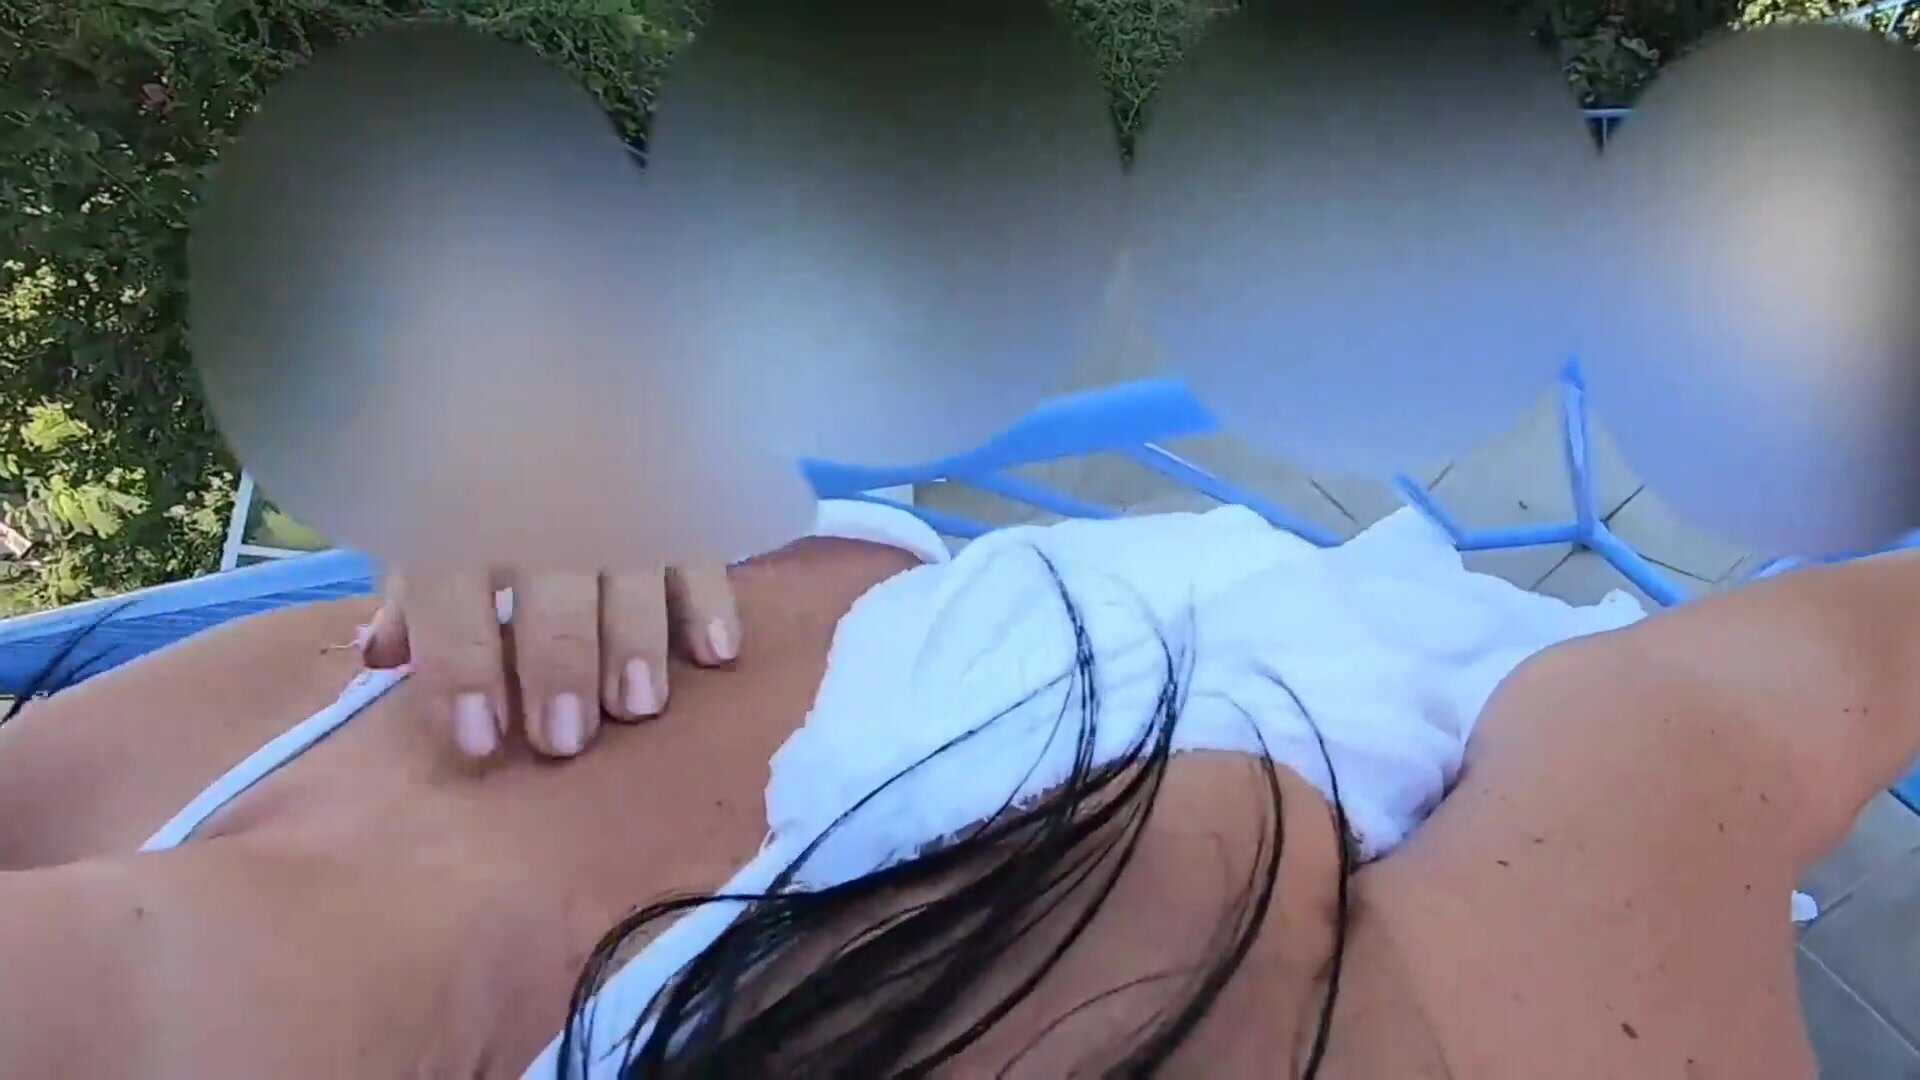 Duitse vrouw anale seks op het balkon in vakantie